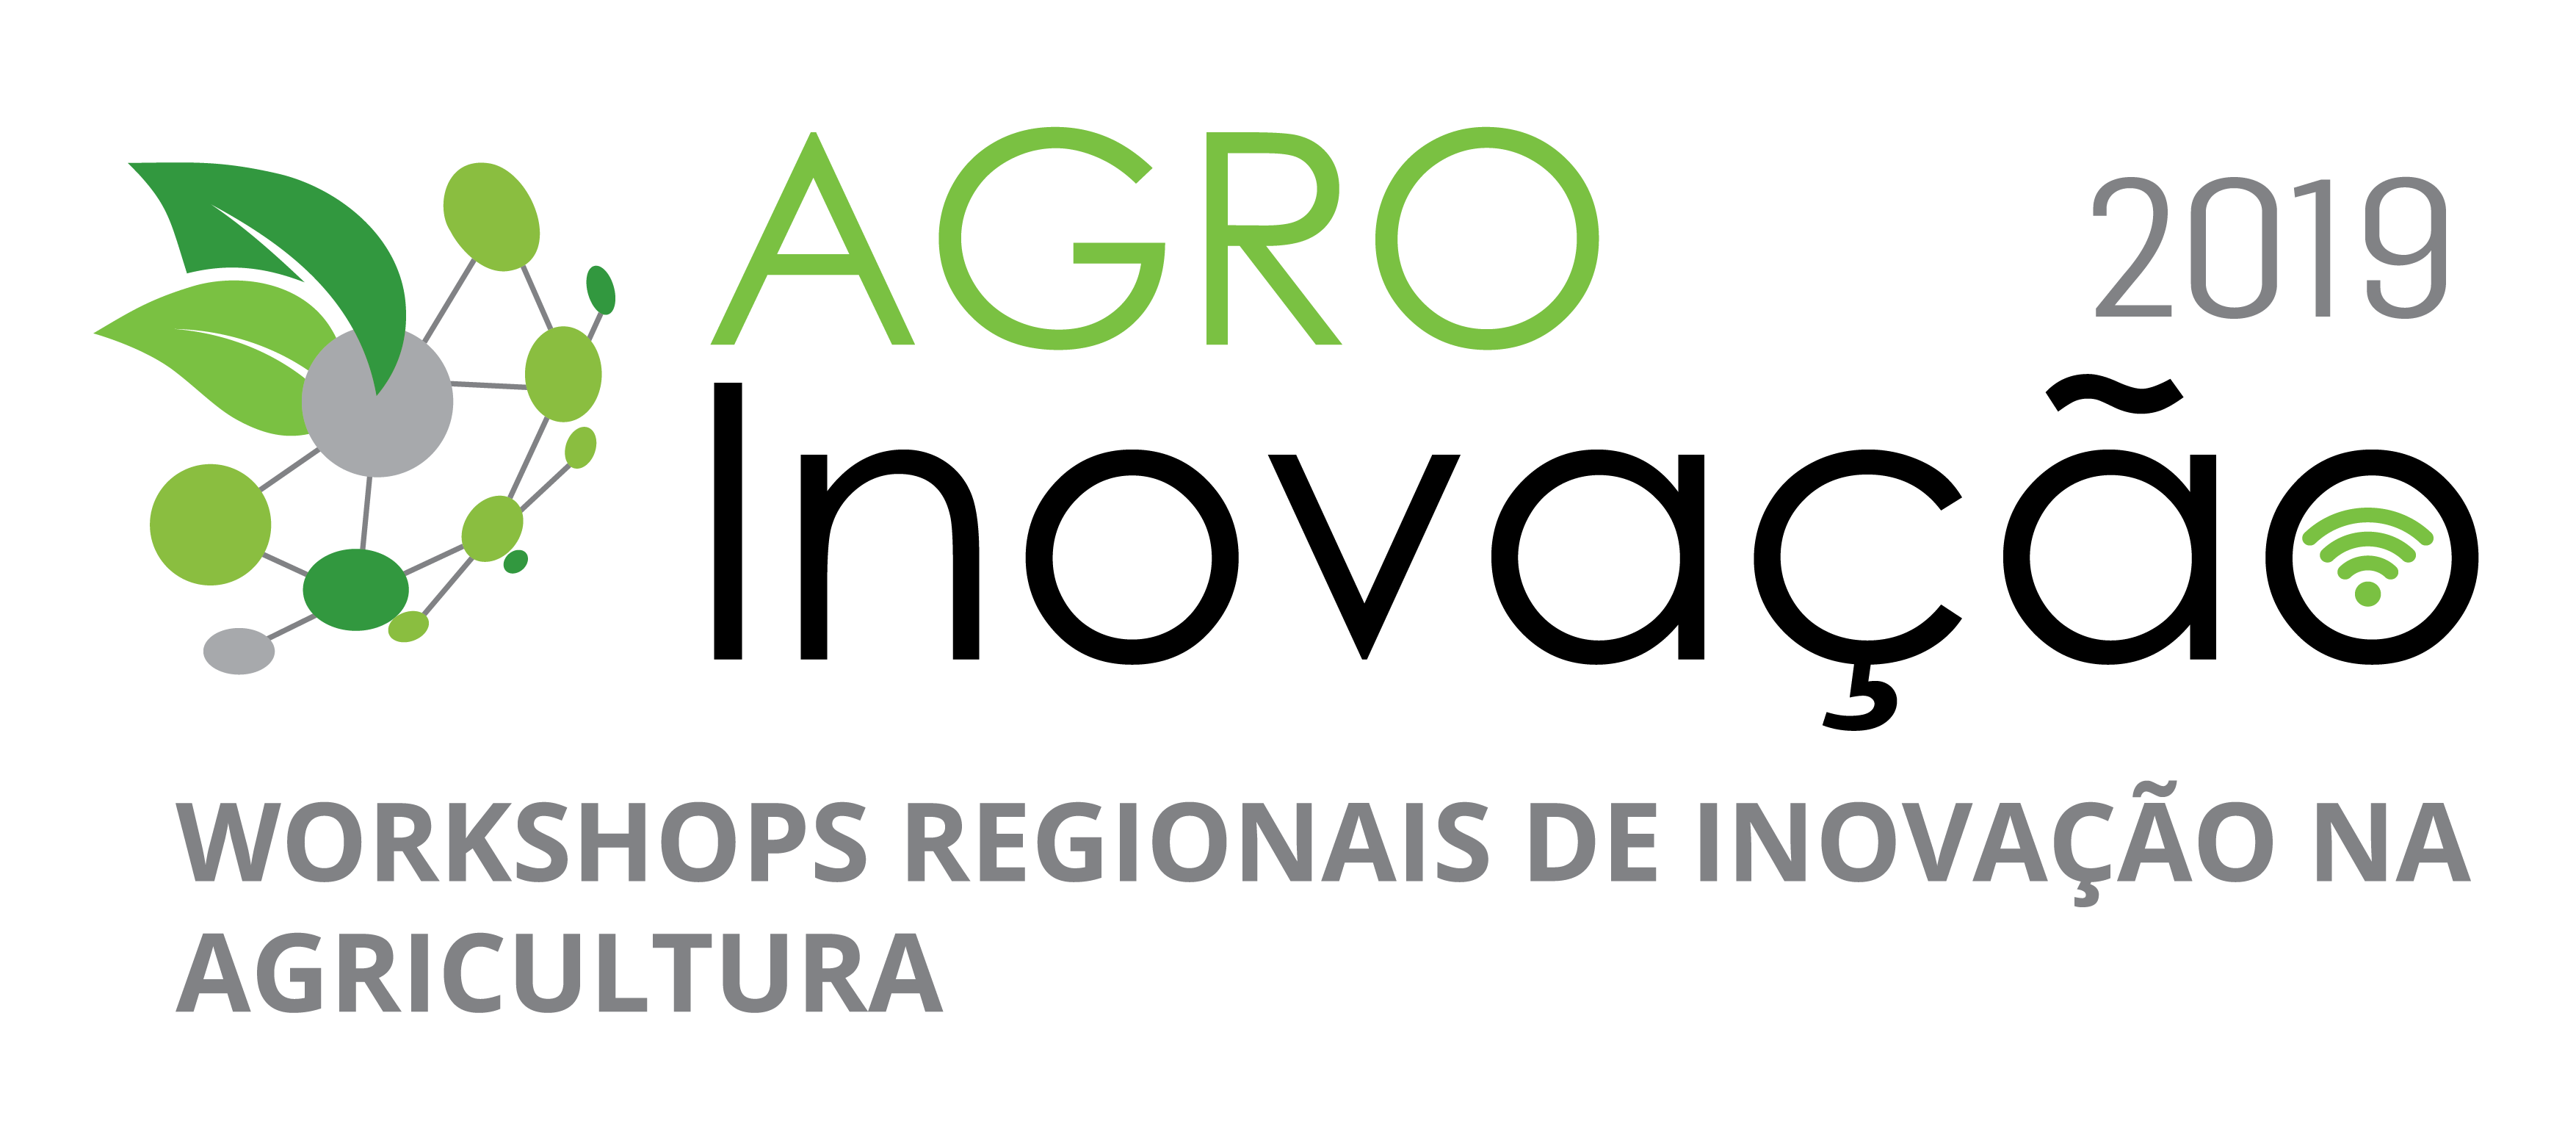 logo AGRO INOVACAO 2019 01